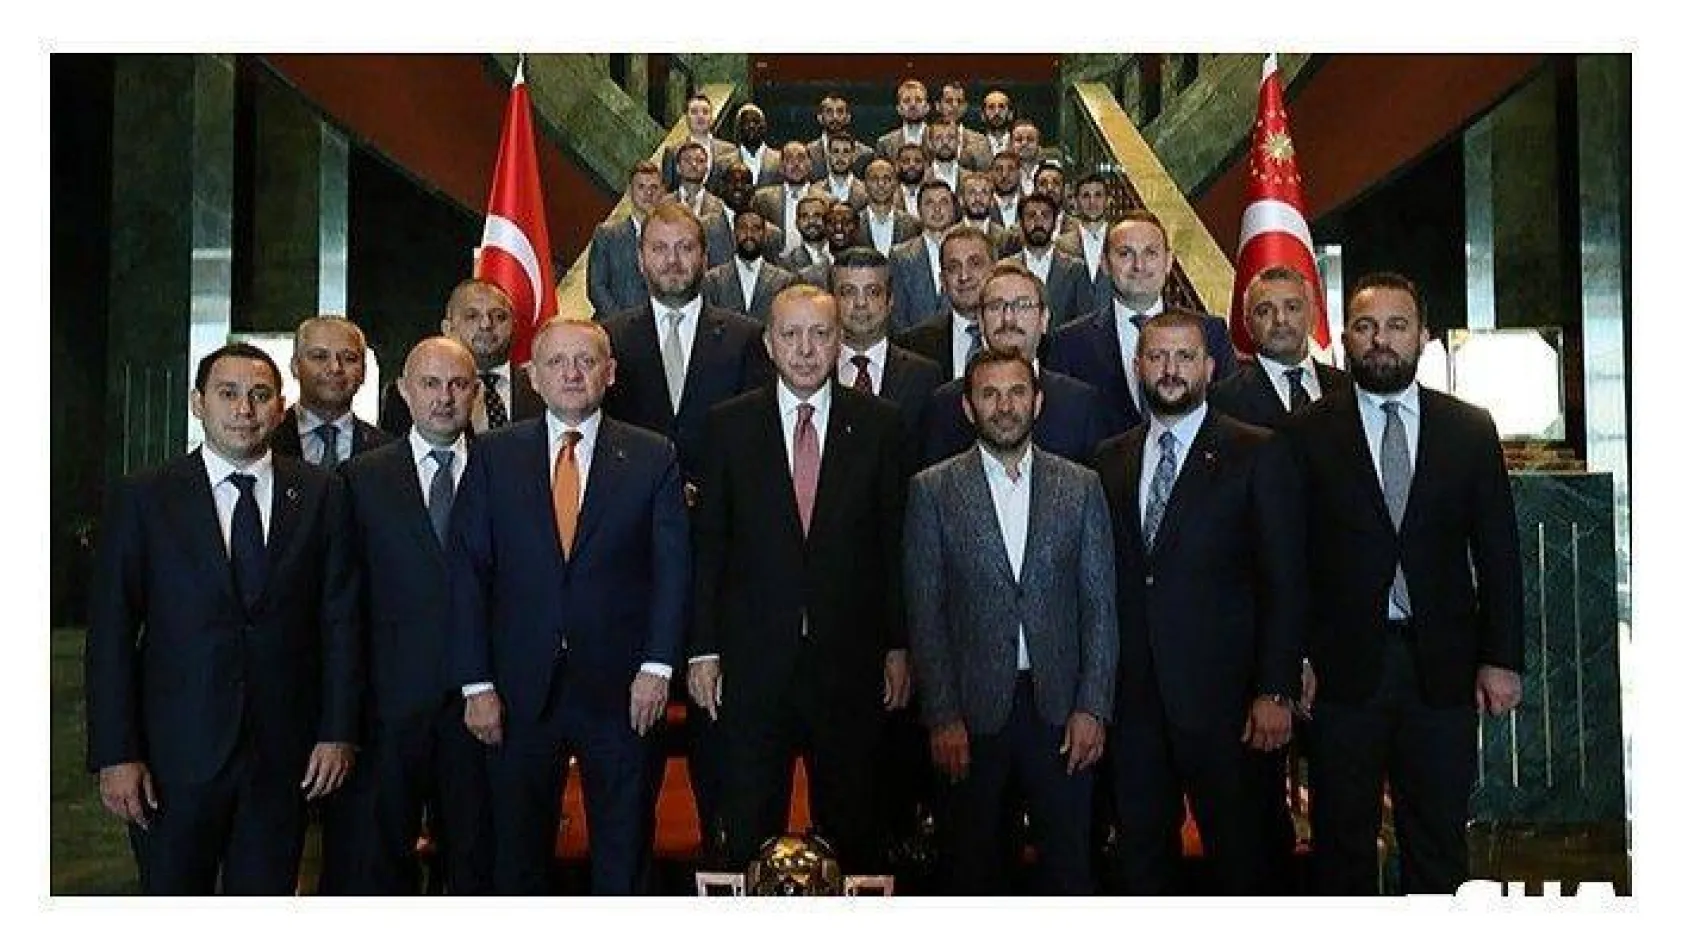 Cumhurbaşkanı Erdoğan, şampiyon Başakşehir'i kabul etti